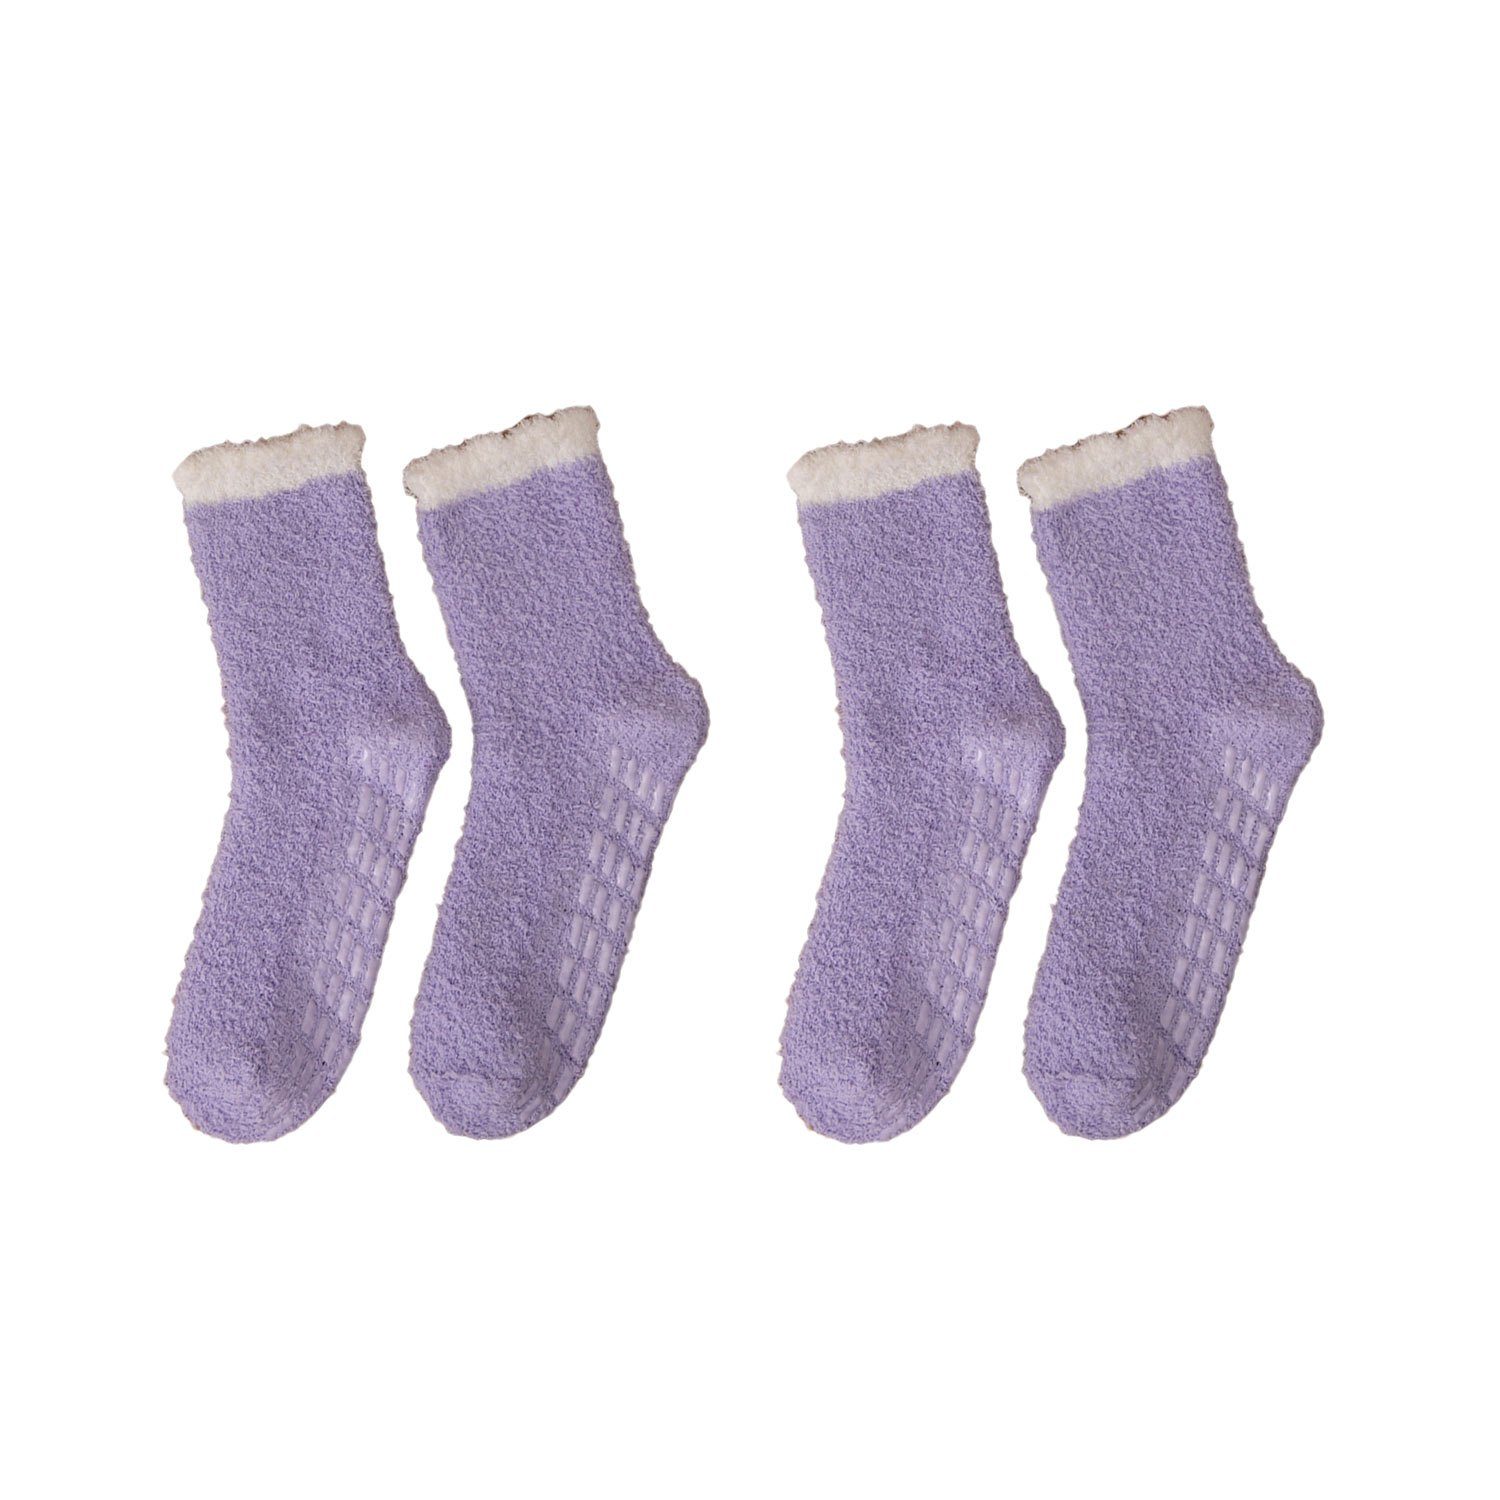 MAGICSHE Langsocken 2 Paare für Winter weiche flauschige Socken Rutschfeste und warme Fleece Socken tiefviolett